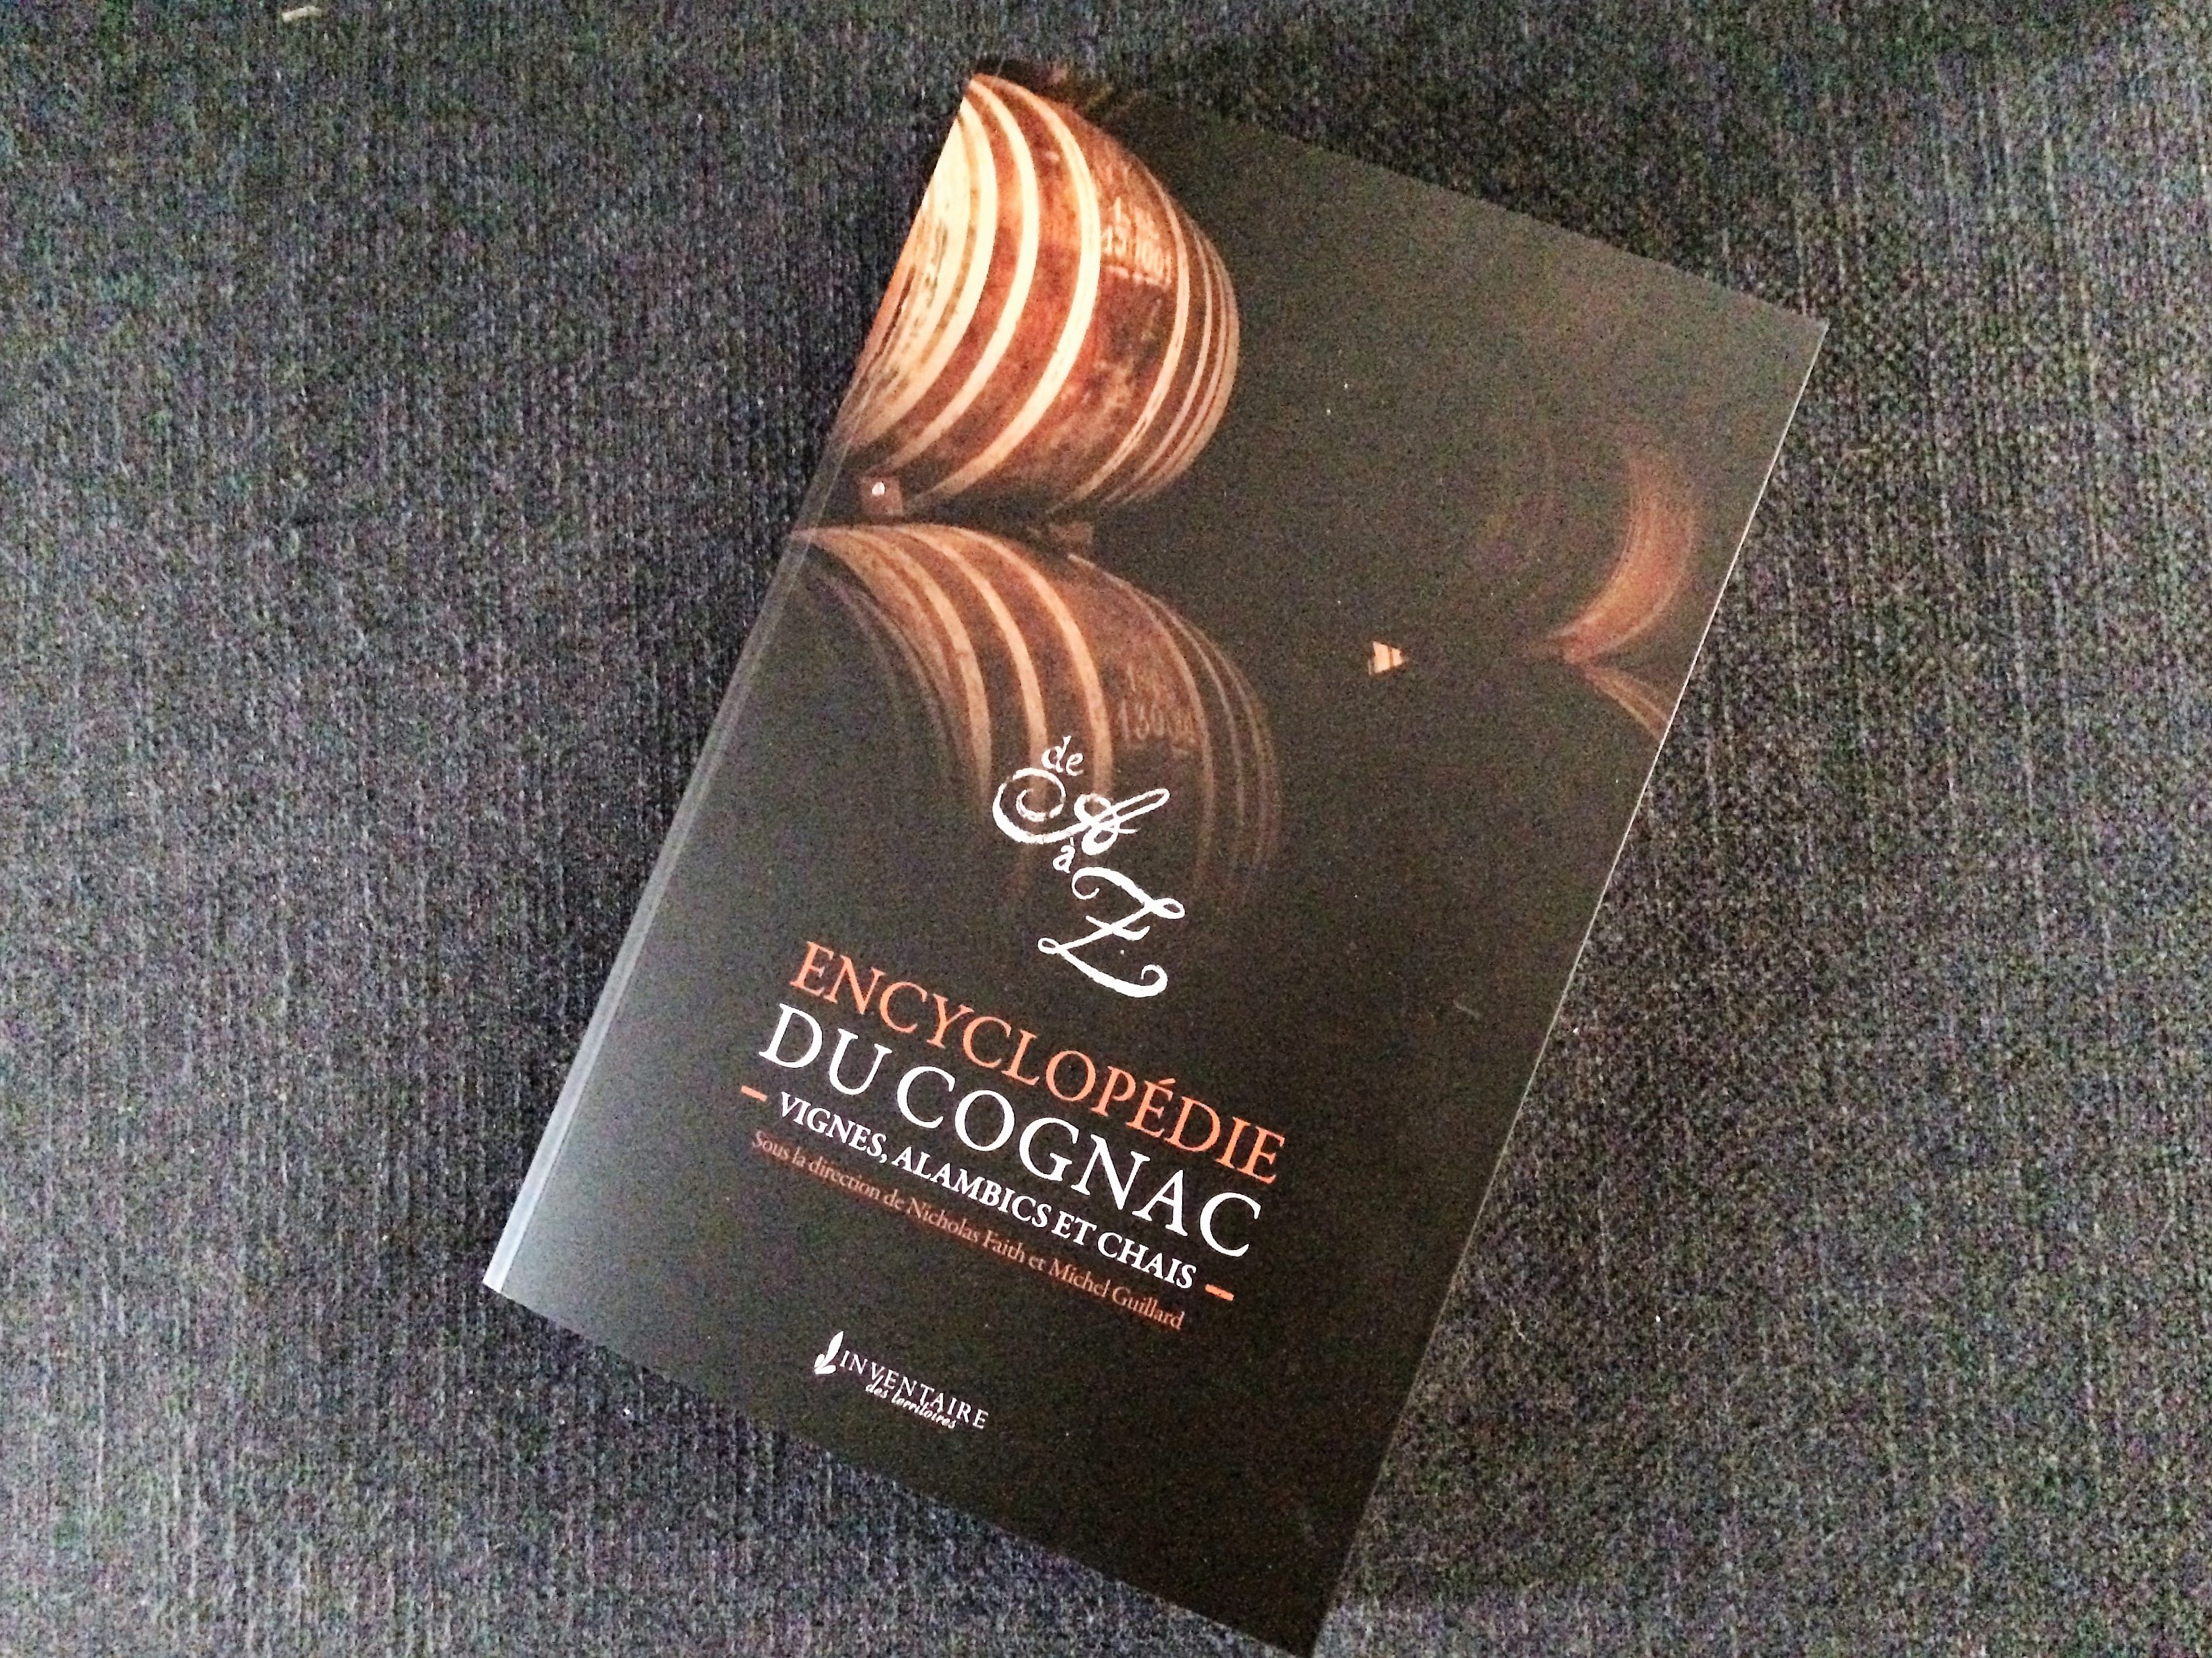 livingincognac - encyclopédie du cognac